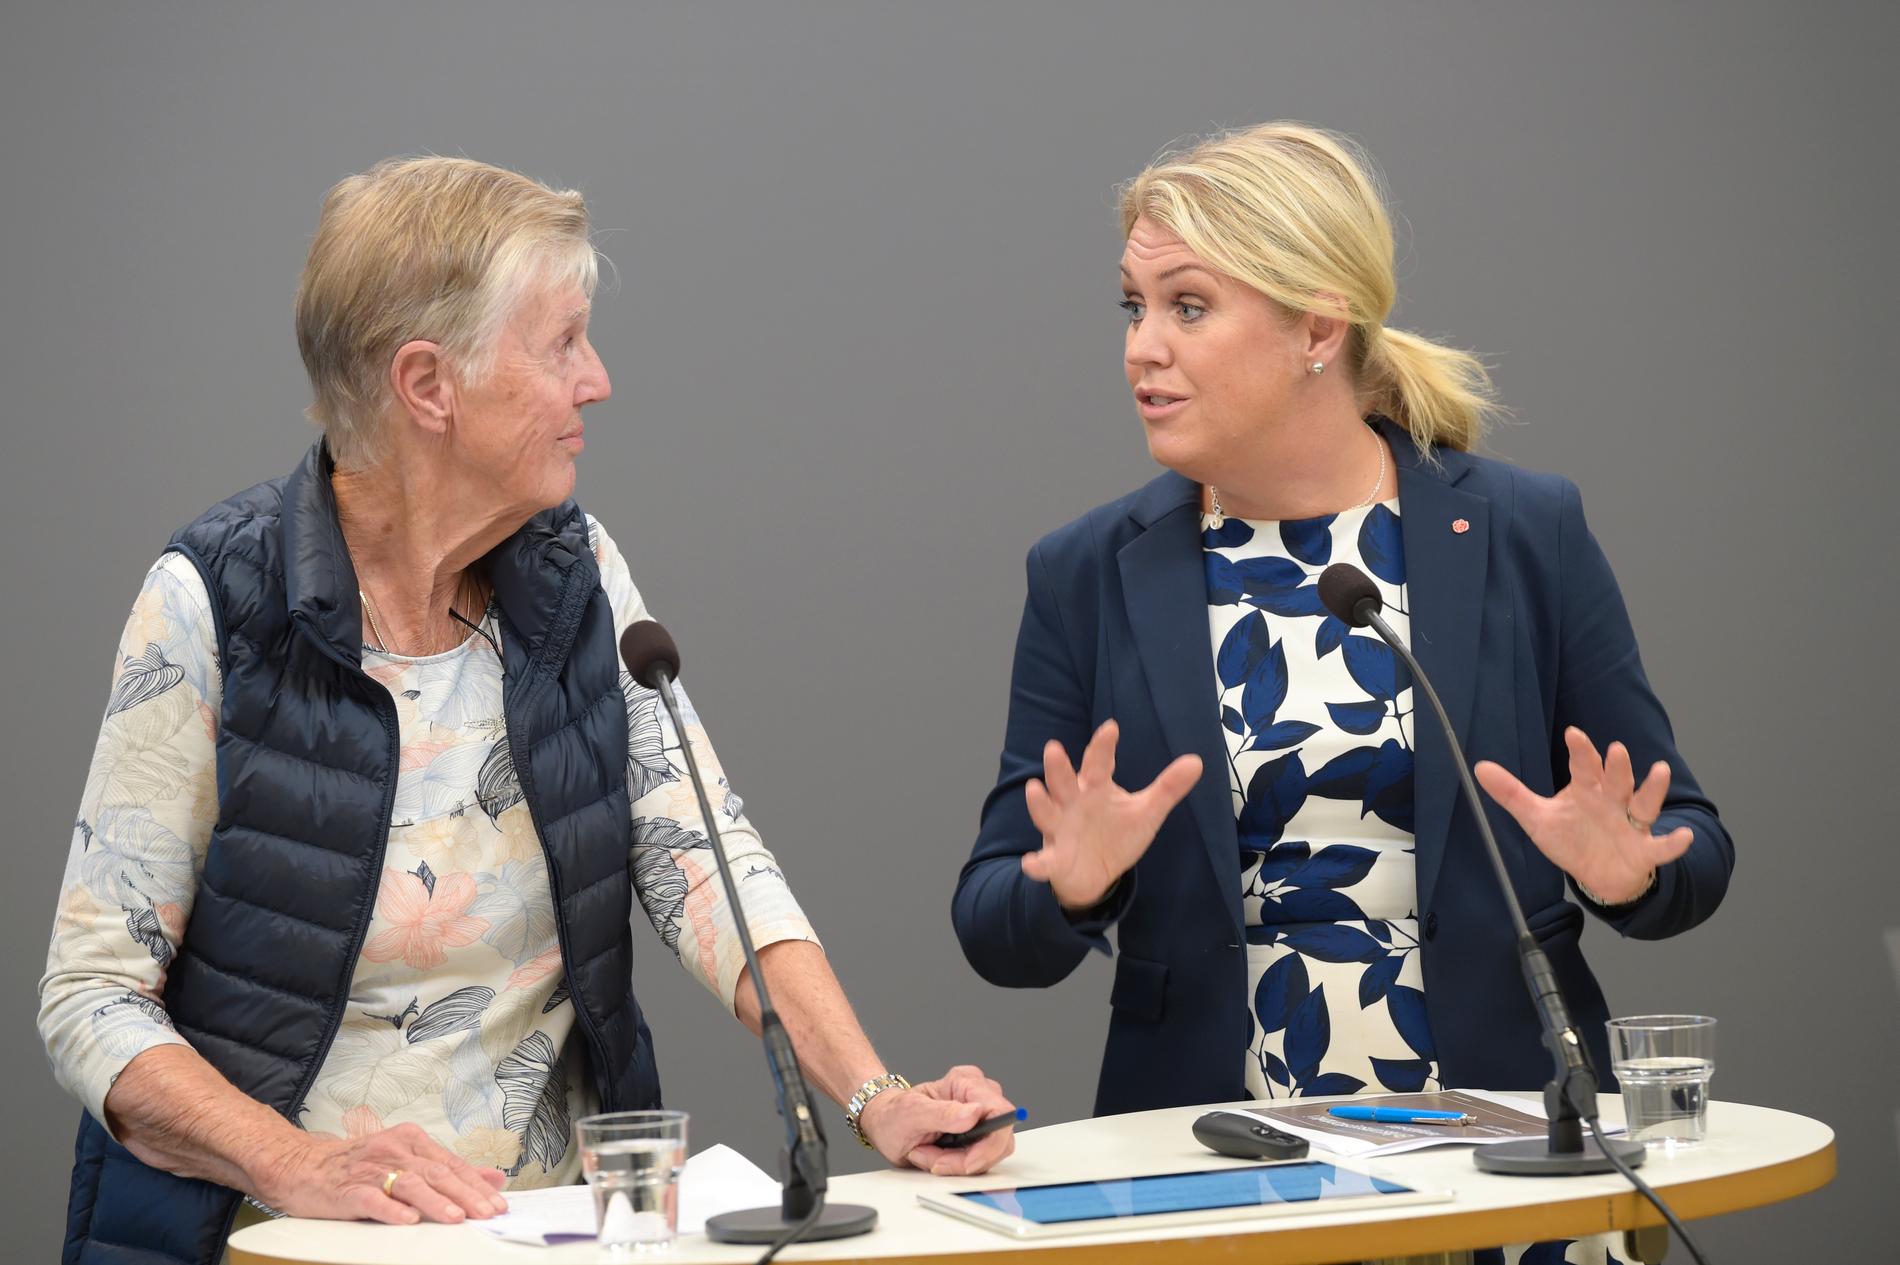 Riksdagsledamoten Barbro Westerholm (L) och socialminister Lena Hallengren (S) under en pressträff i Rosenbad i Stockholm.